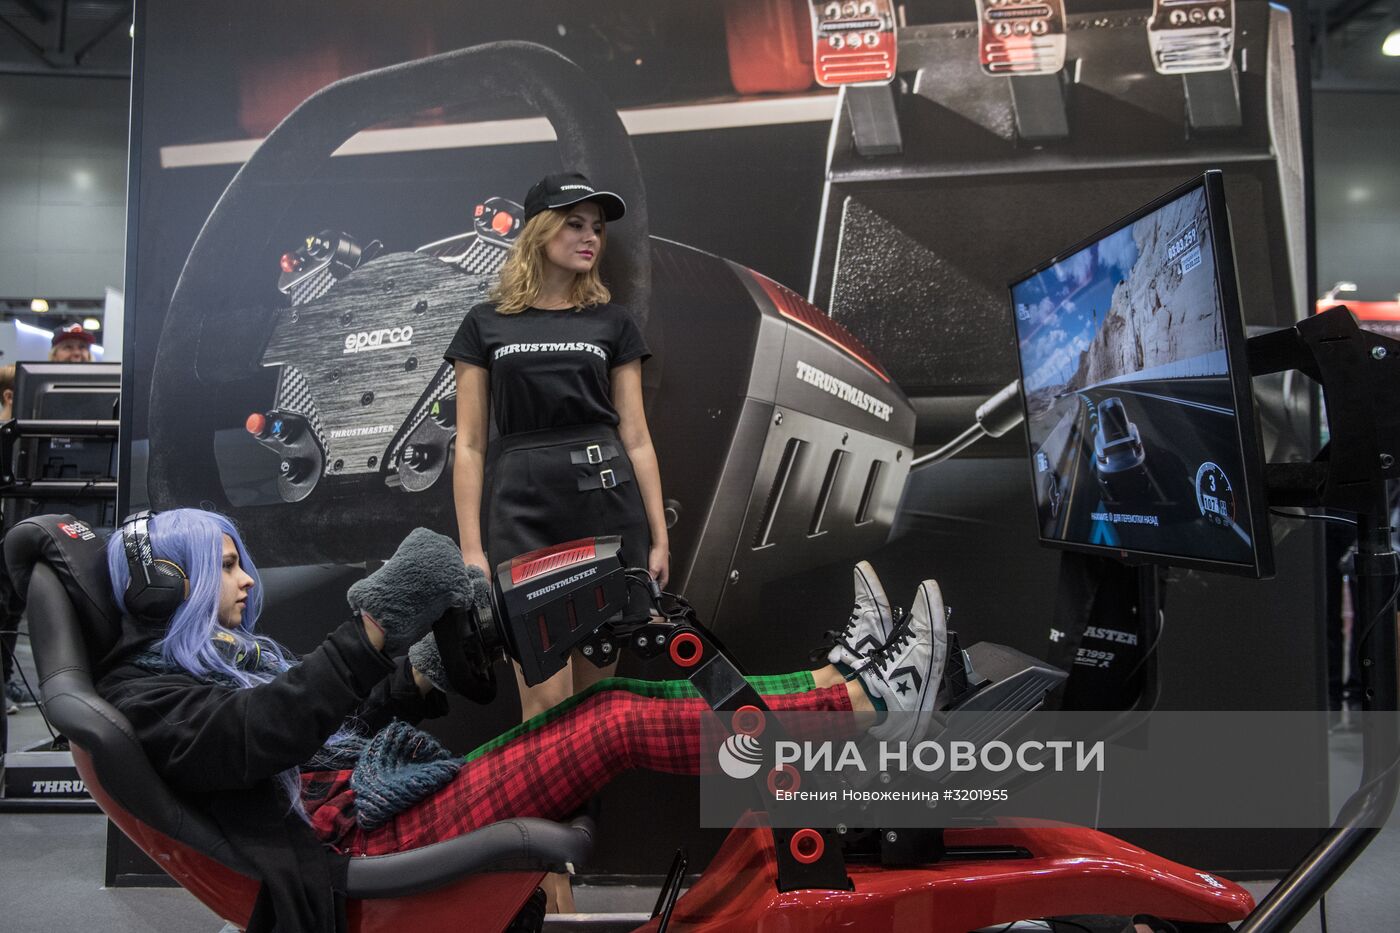 Выставка "ИгроМир 2017" и фестиваль Comic Con Russia 2017